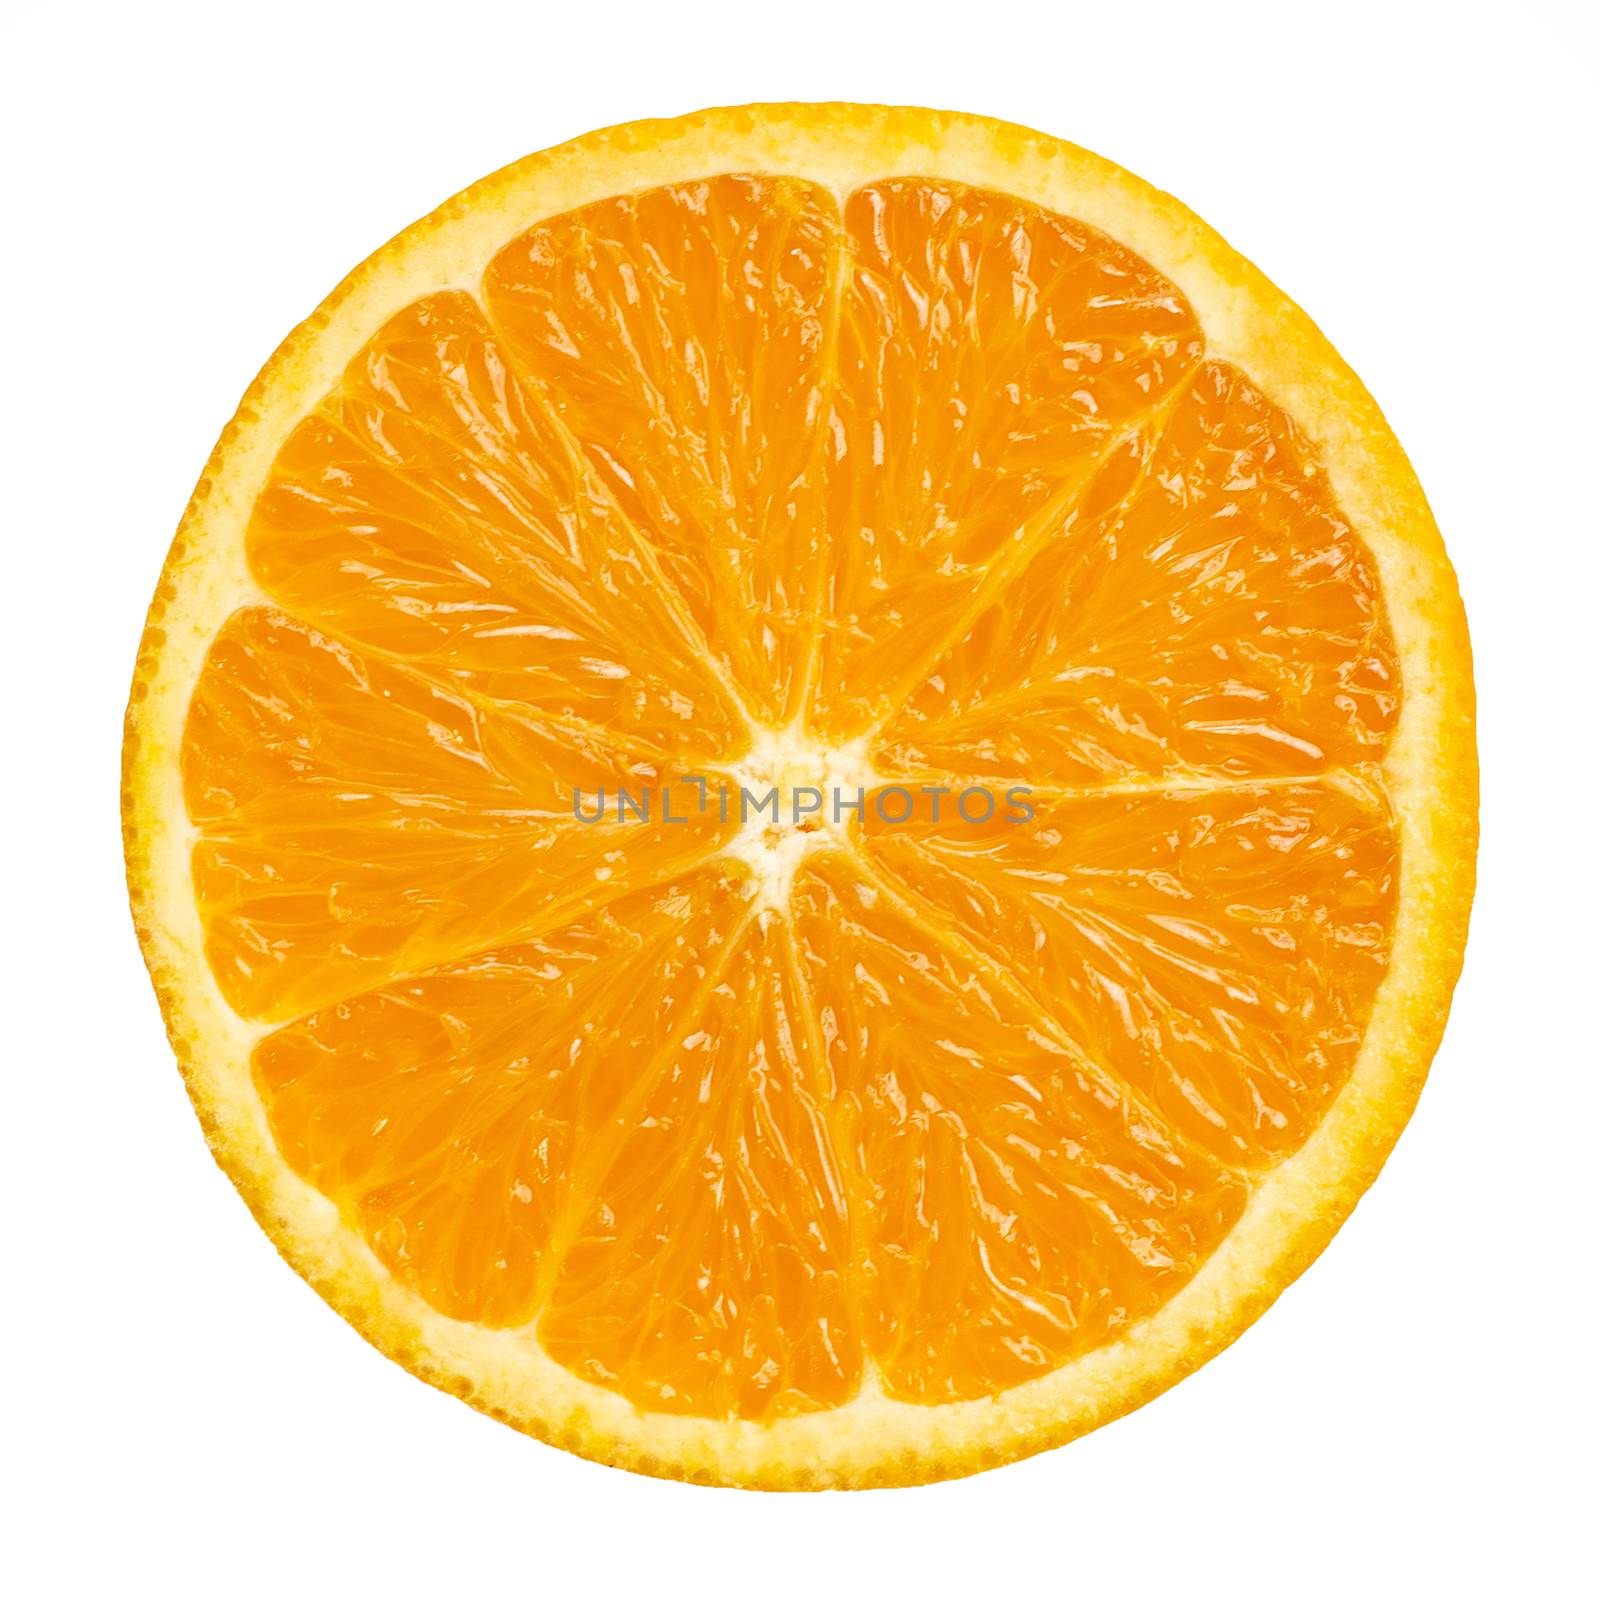 Orange slice isolated on white by Bowonpat